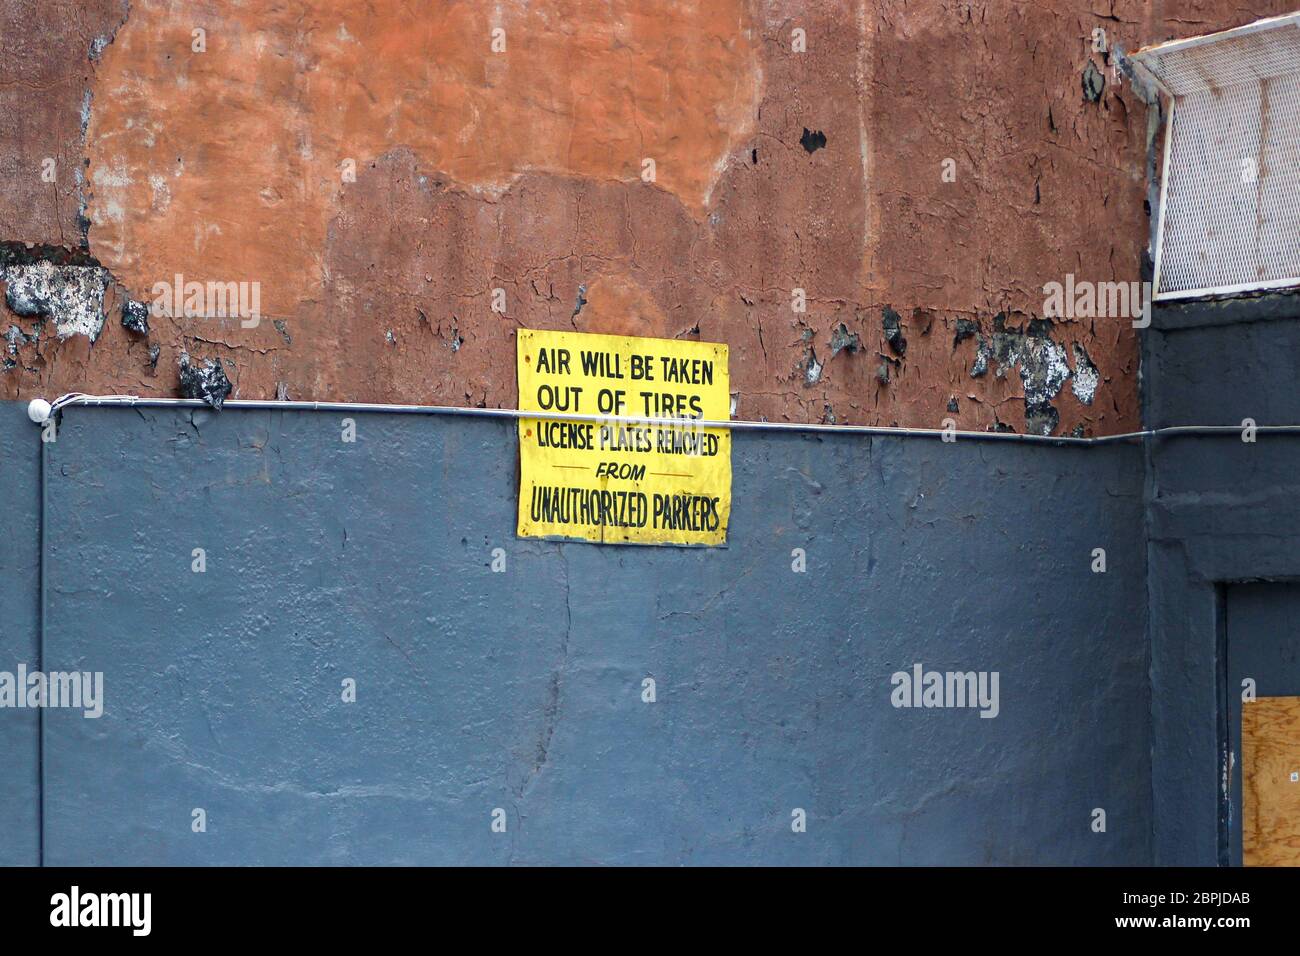 Die Luft wird aus den Reifen genommen und die Kennzeichen von nicht autorisierten Parkern entfernt. Schild an der Wand in New Yorkc City, Vereinigte Staaten von Amerika. Stockfoto